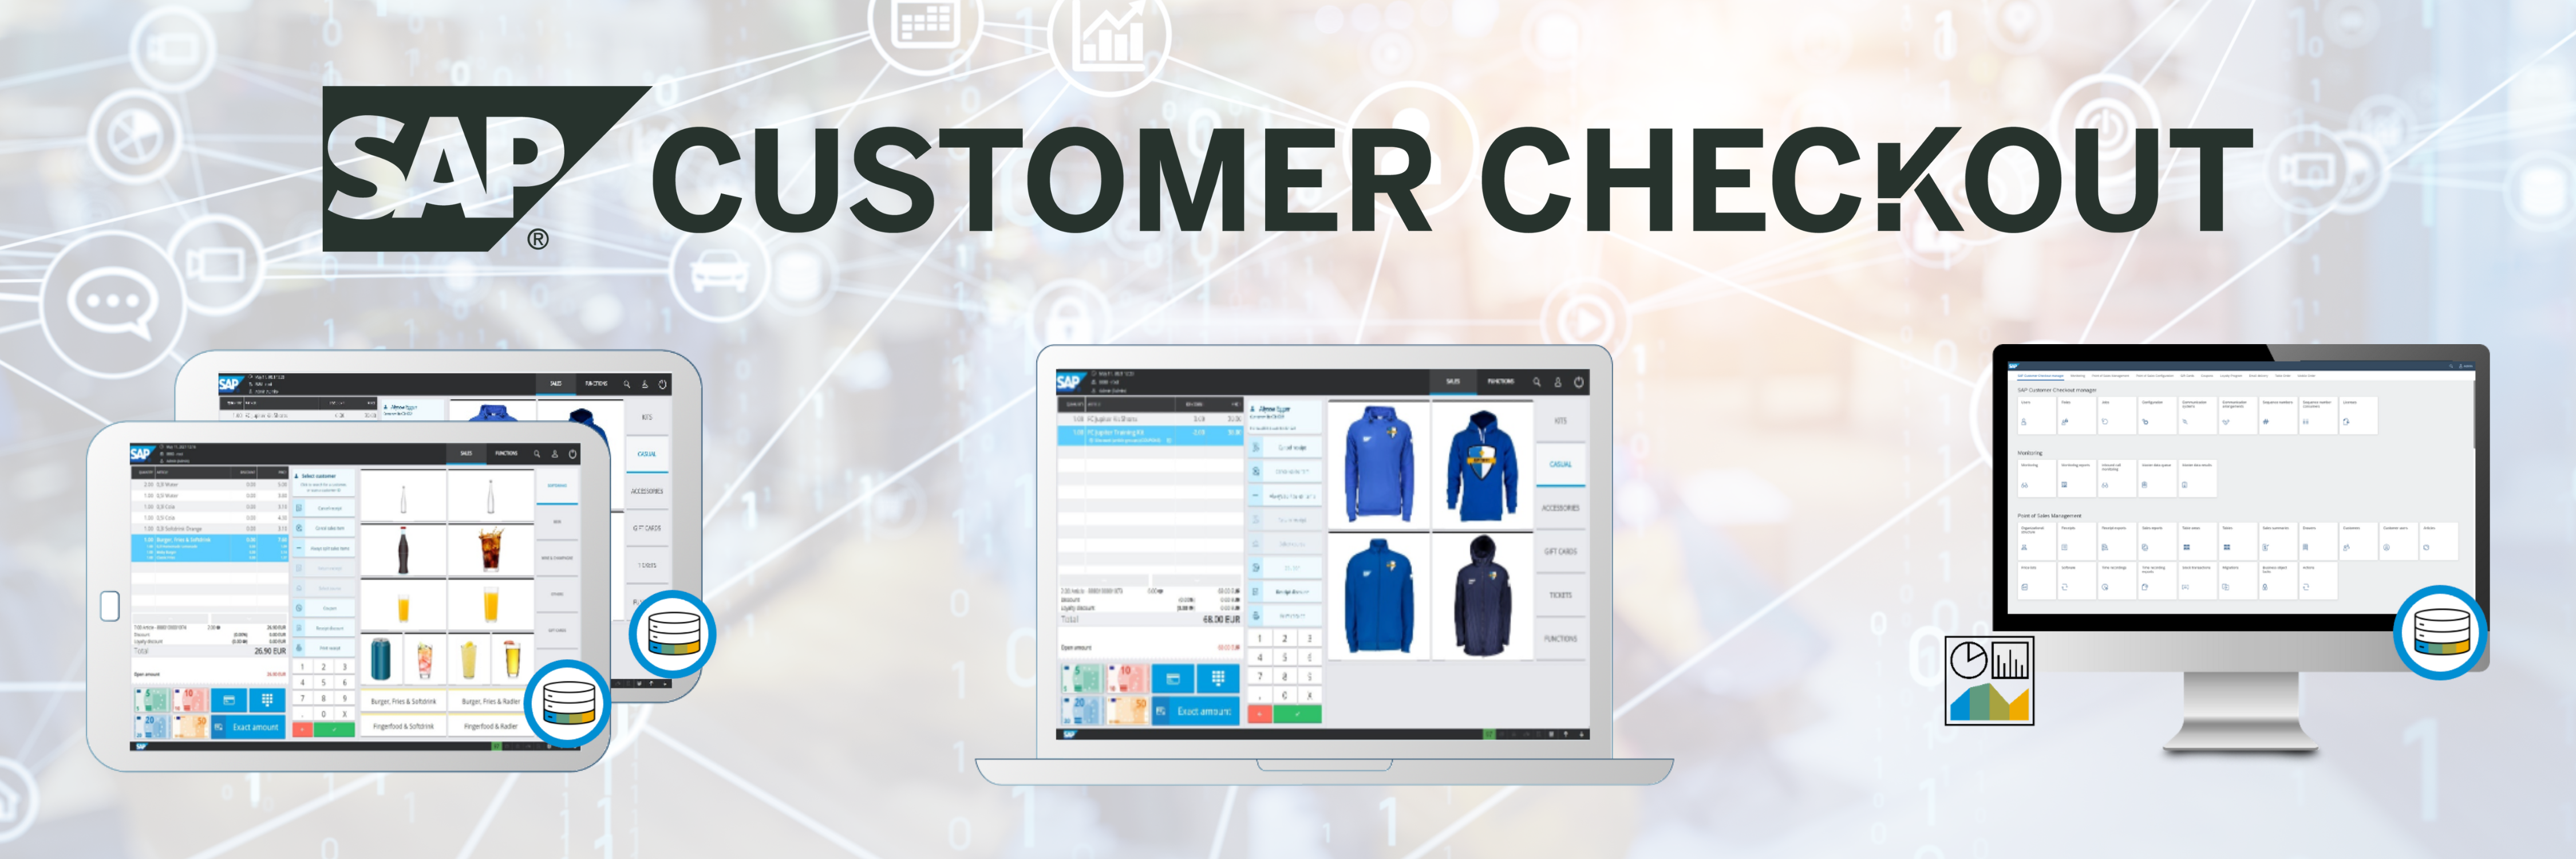 SAP Customer Checkout